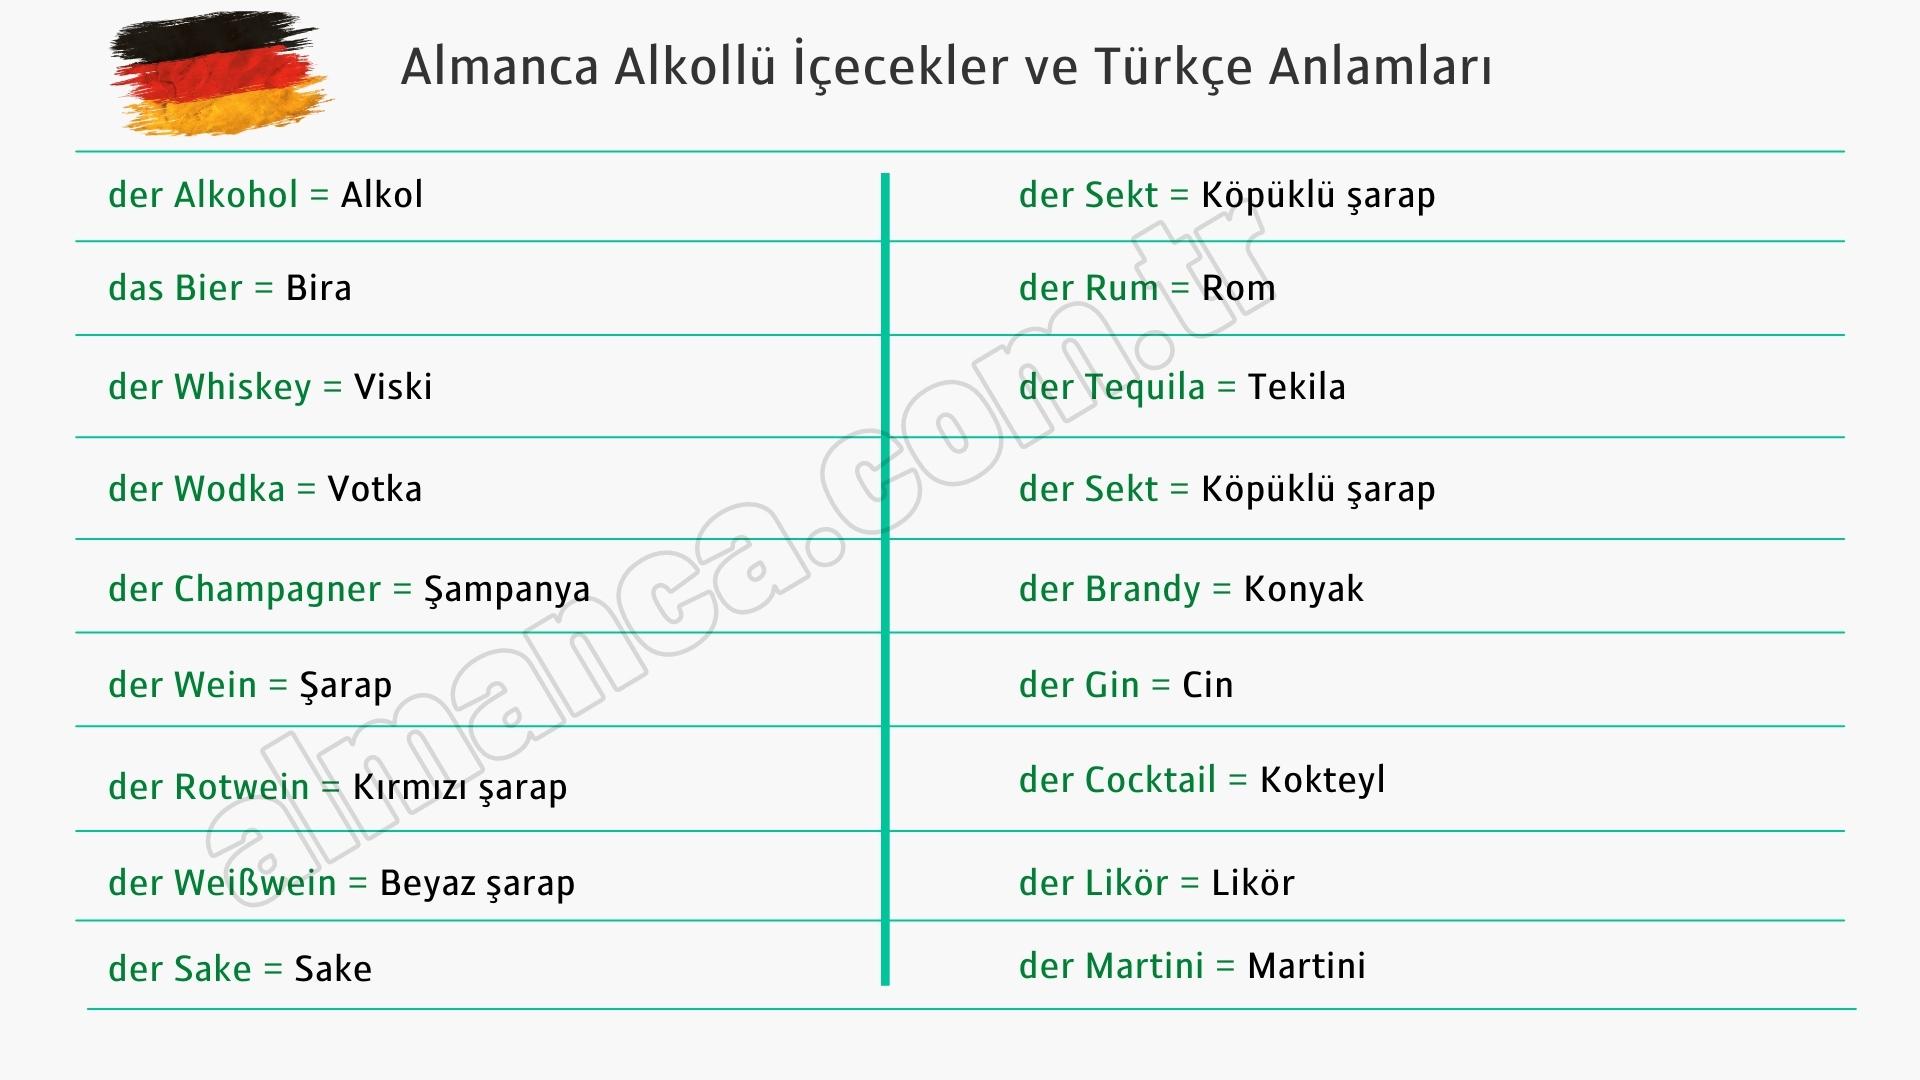 Almanca Alkollü İçecekler ve Türkçe Anlamları